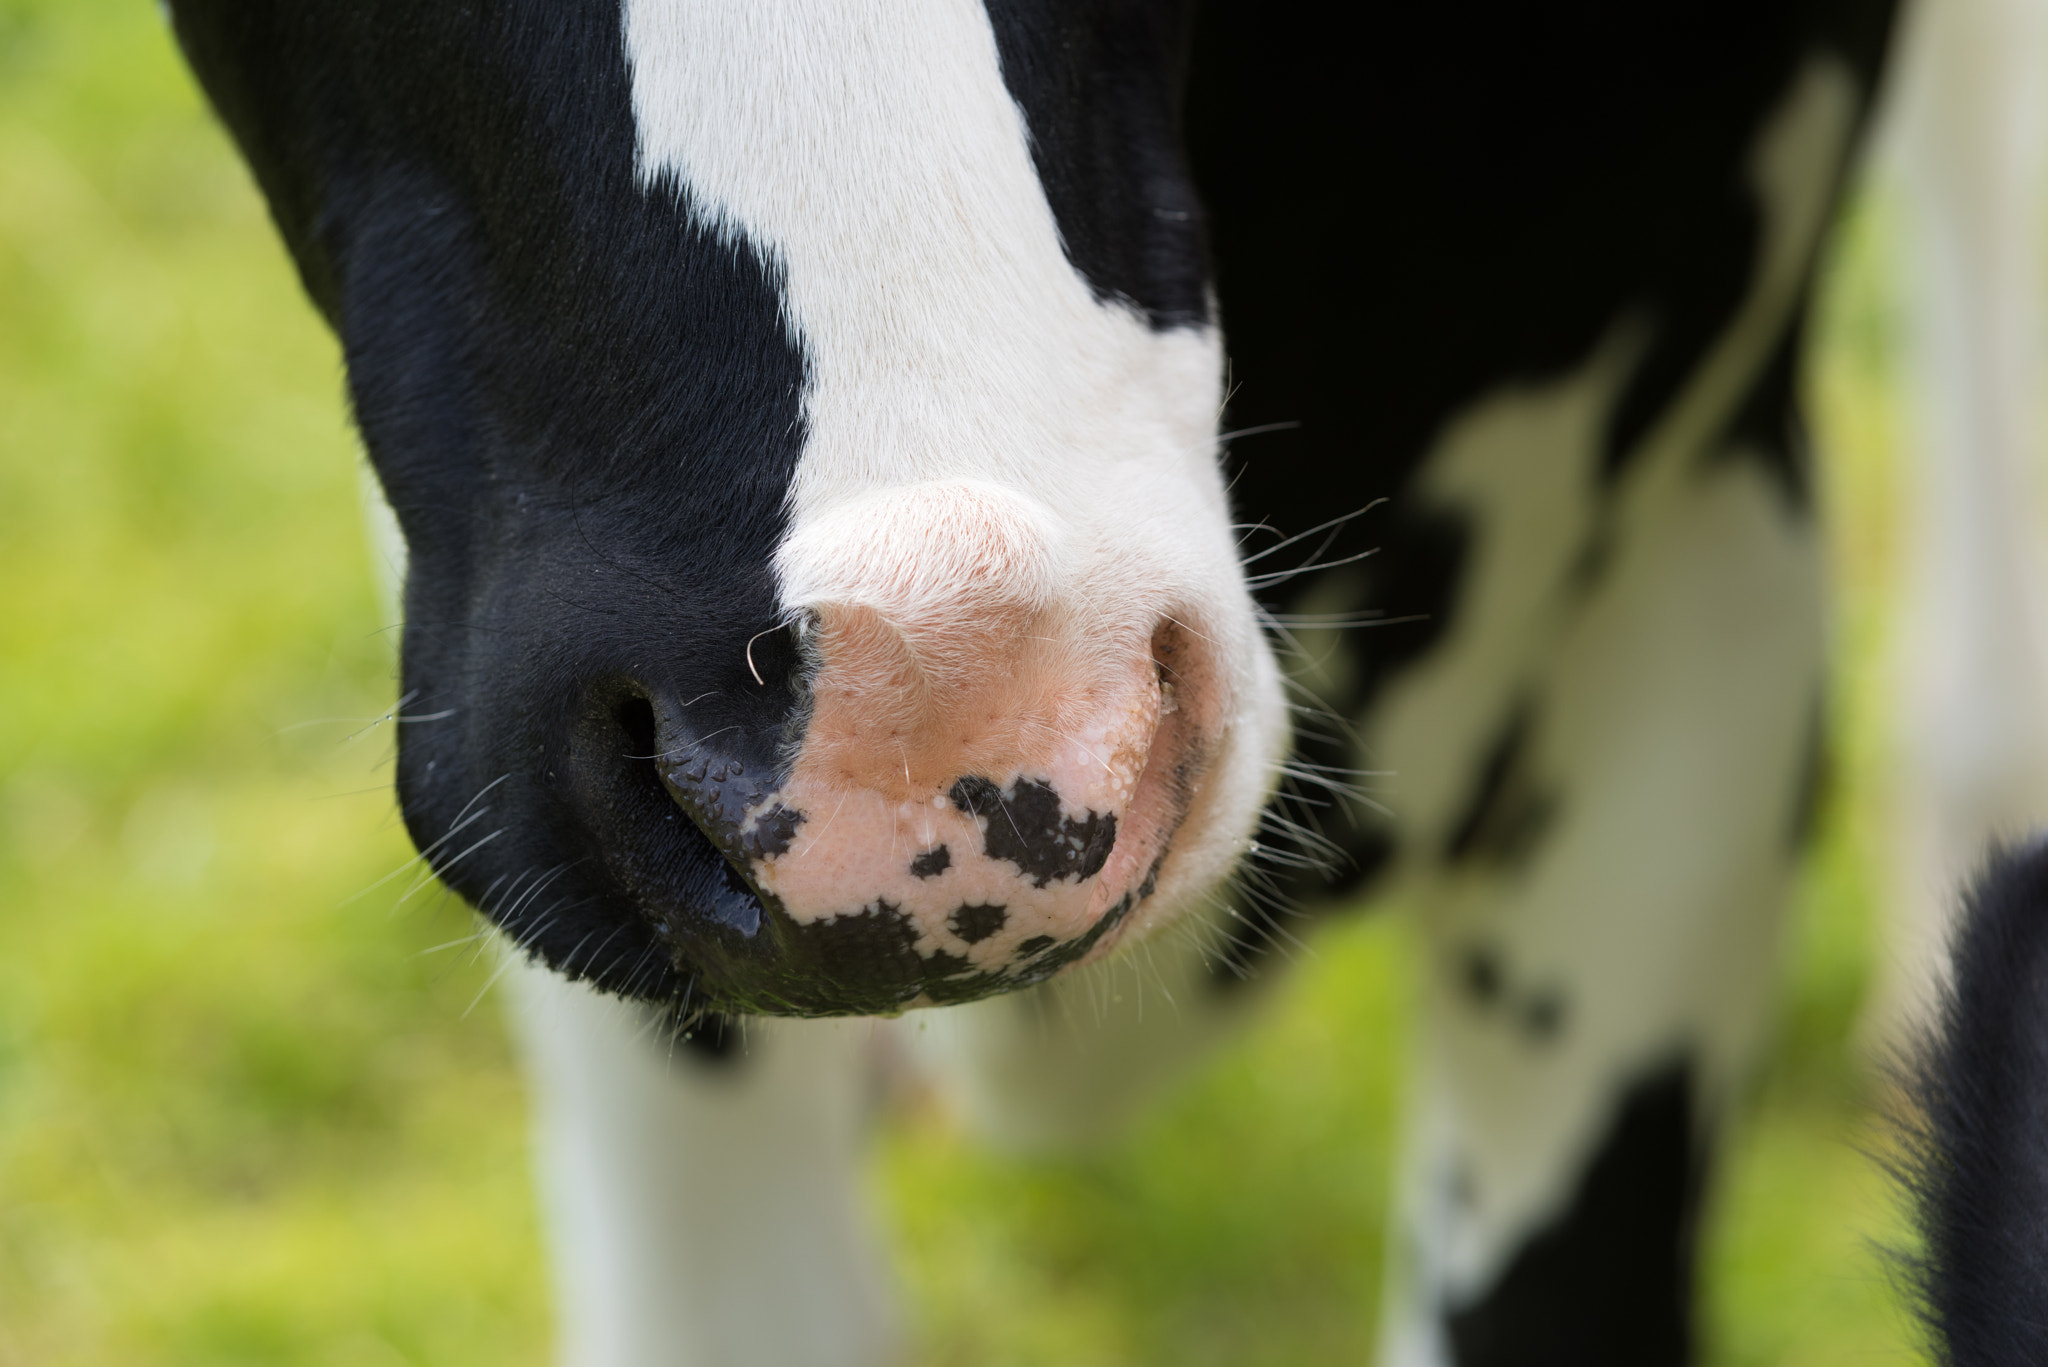 Pentax K-1 sample photo. Cows nose closeup photography